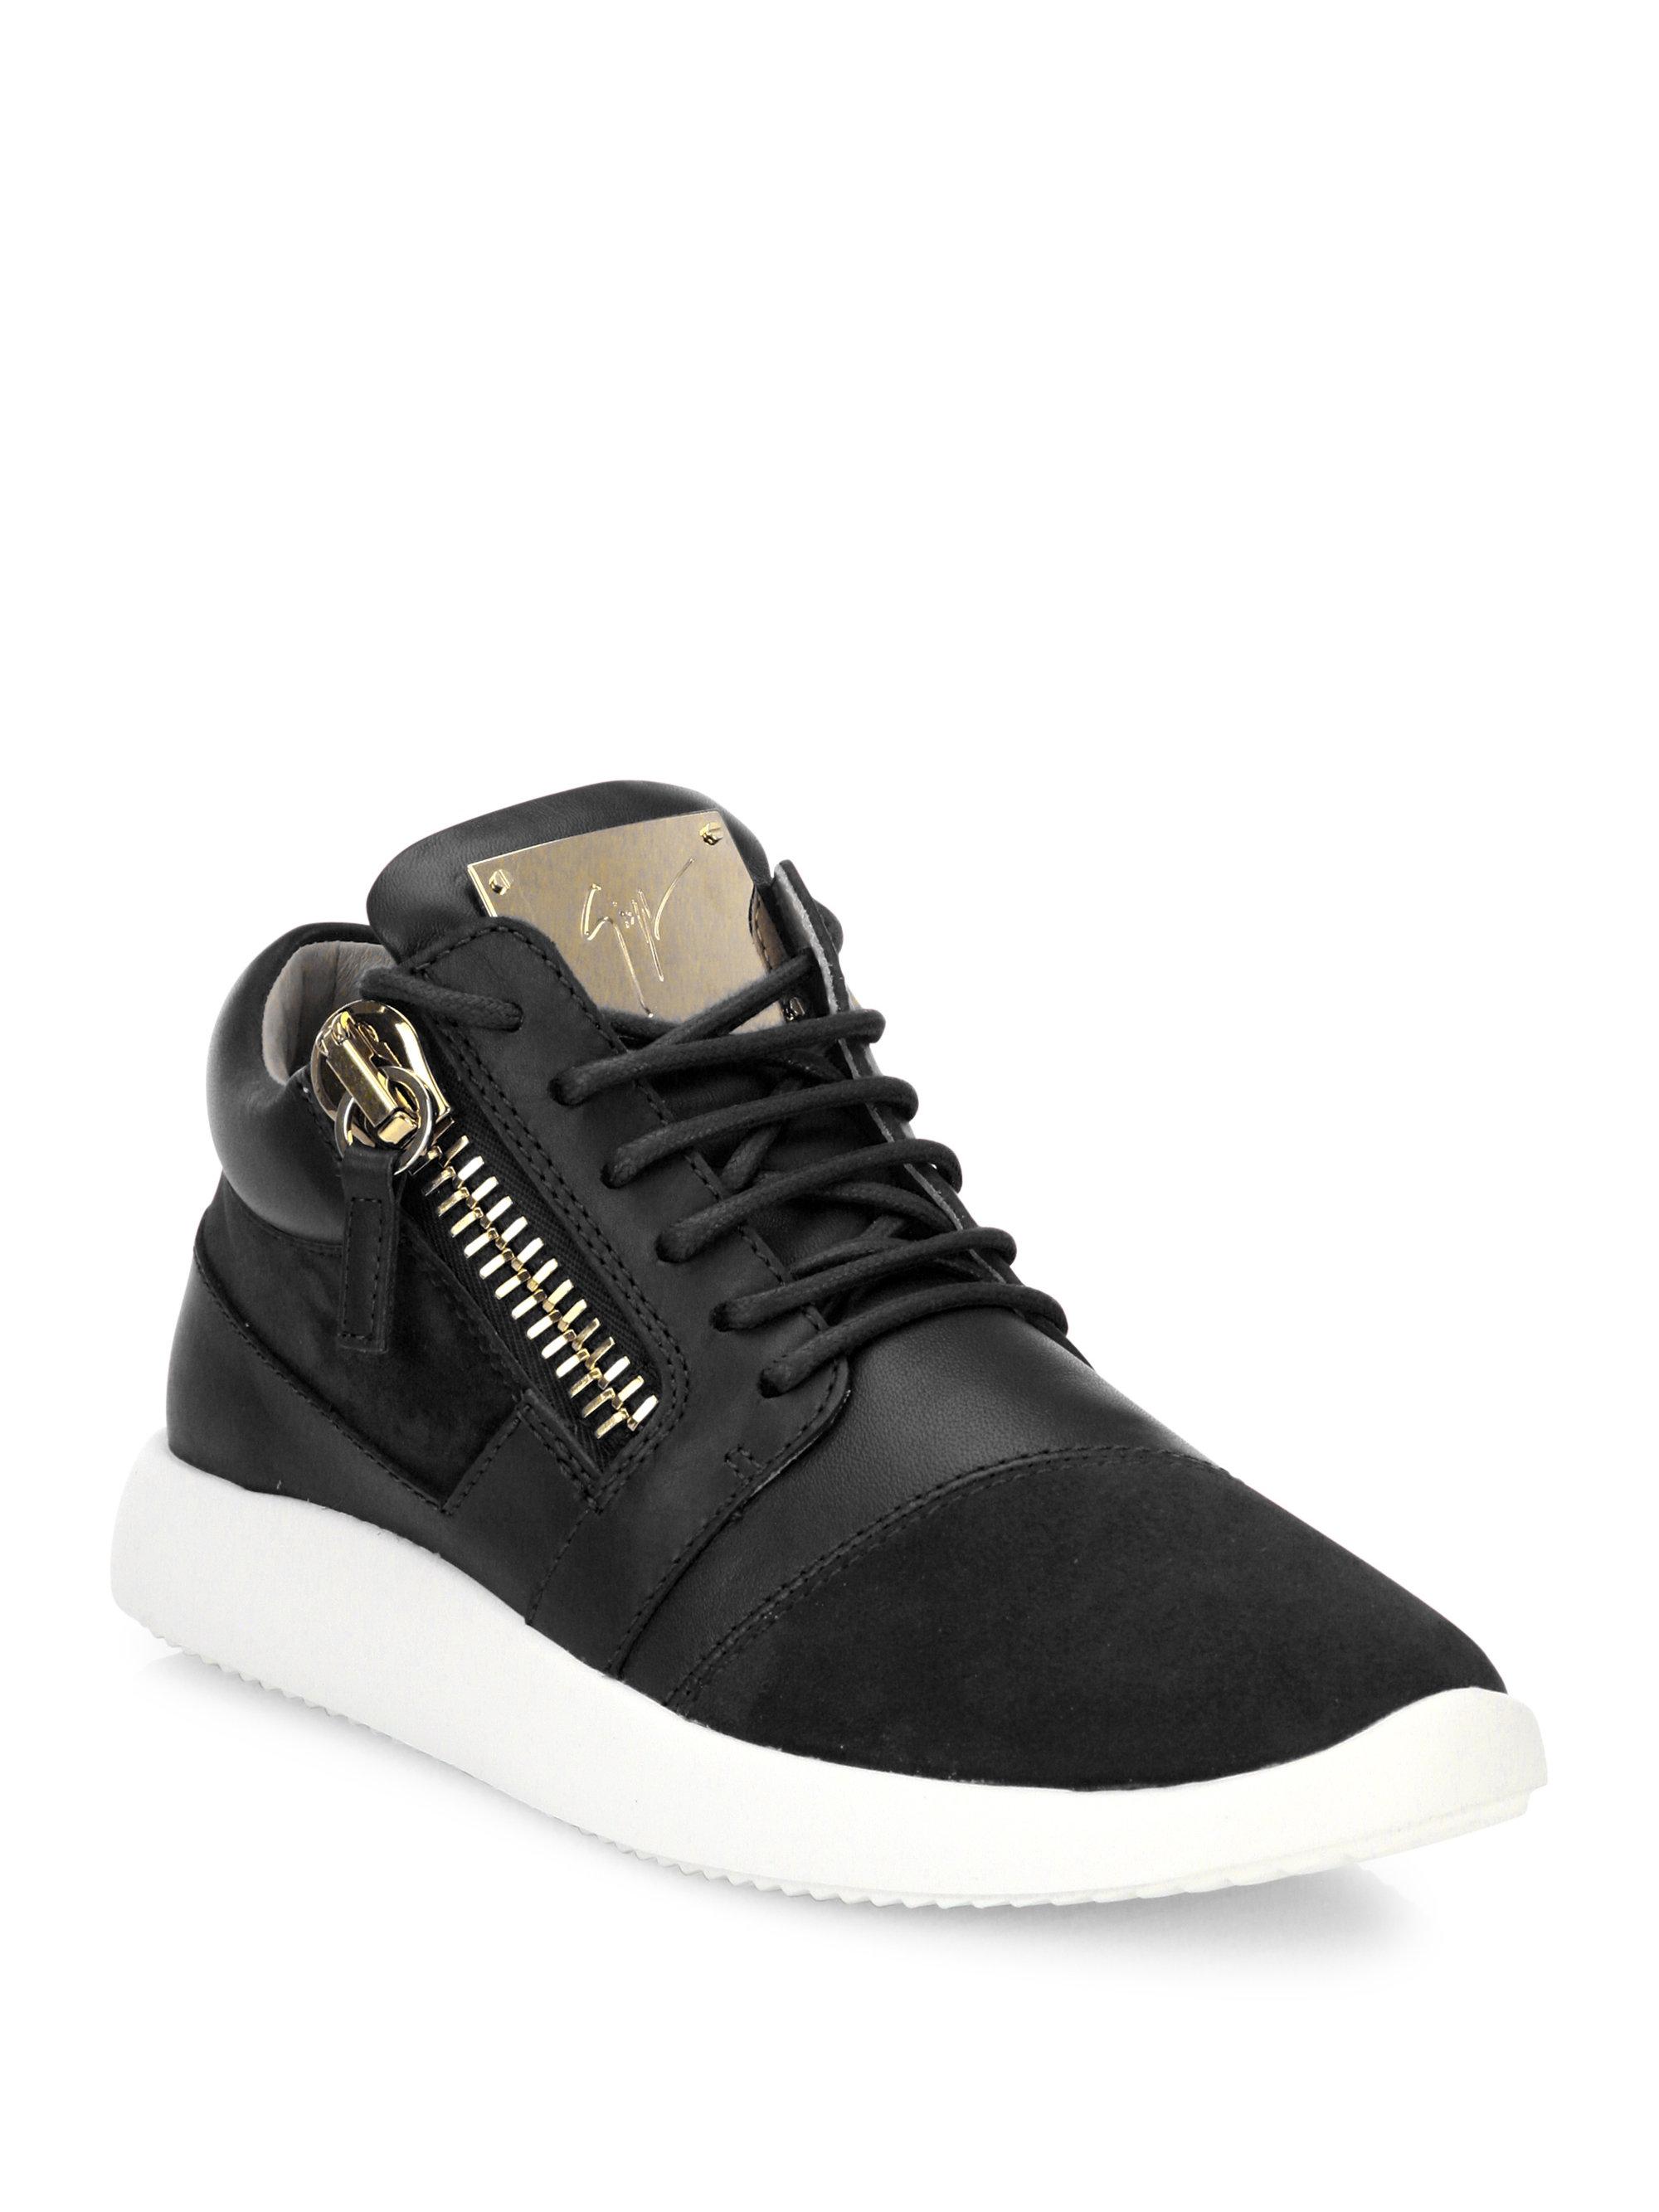 Giuseppe zanotti Leather & Suede Side-zip Sneakers in Black for Men | Lyst